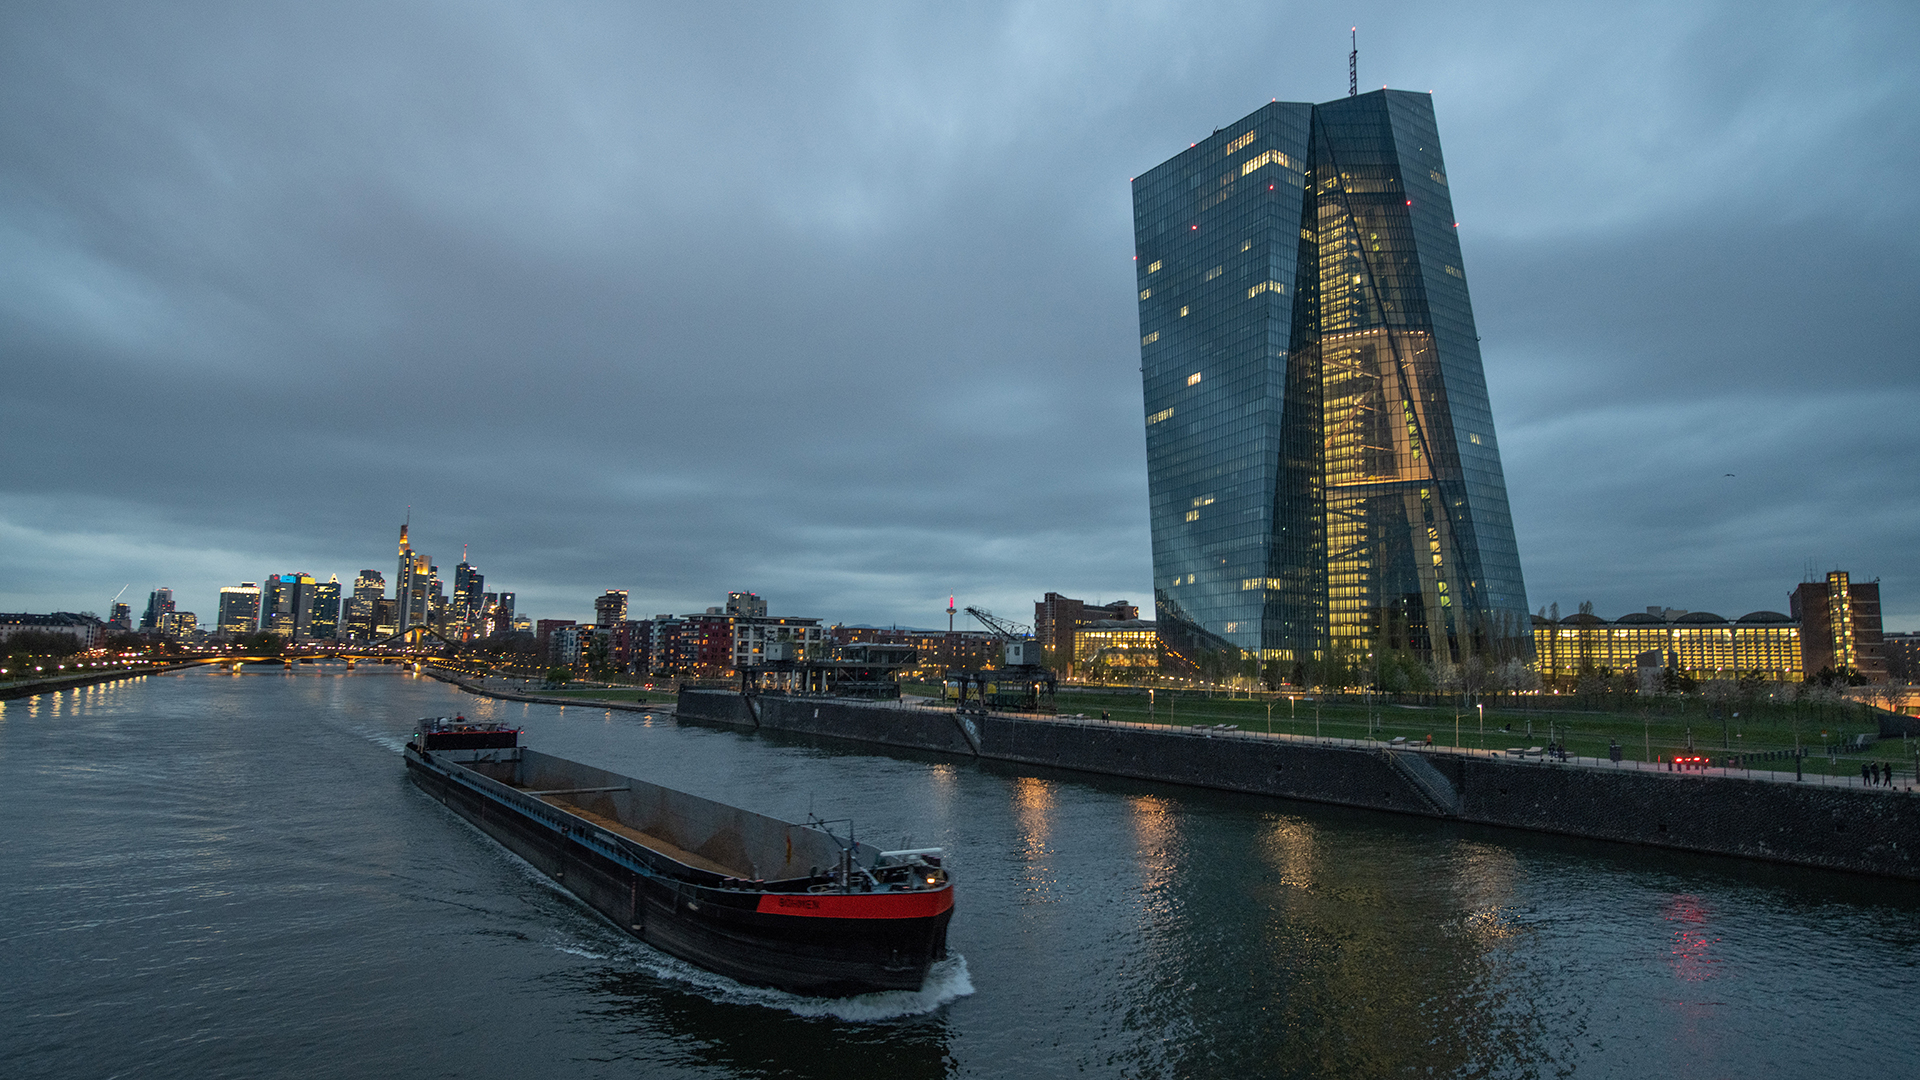 Ein Binnenschiff fährt im letzten Licht des Tages vor der Bankenskyline der Innenstadt über den Main an der EZB (Europäische Zentralbank) vorbei. | dpa